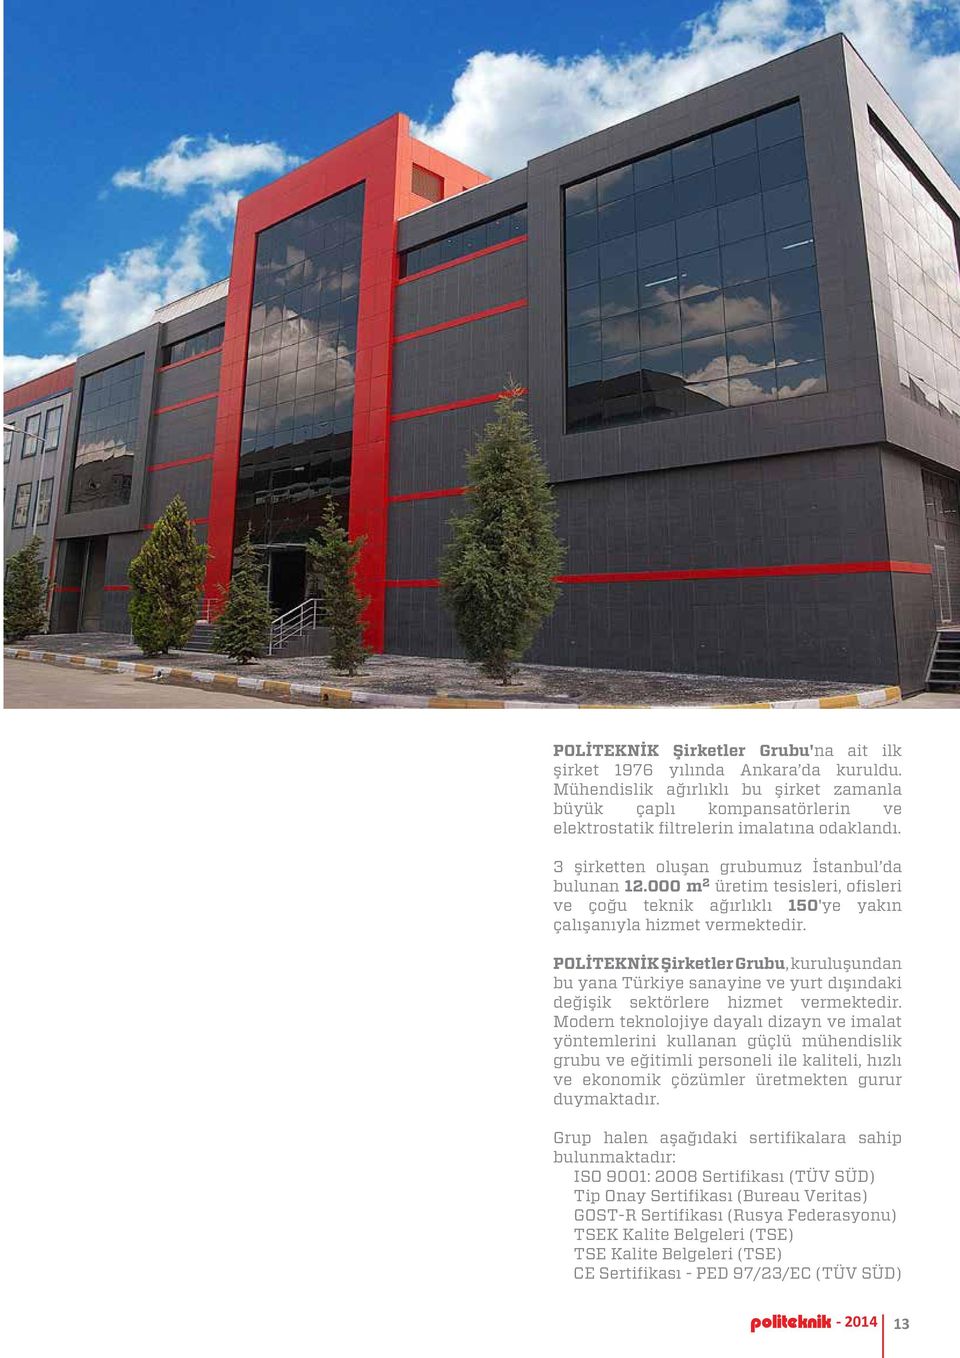 POLİTEKNİK Şirketler Grubu, kuruluşundan bu yana Türkiye sanayine ve yurt dışındaki değişik sektörlere hizmet vermektedir.